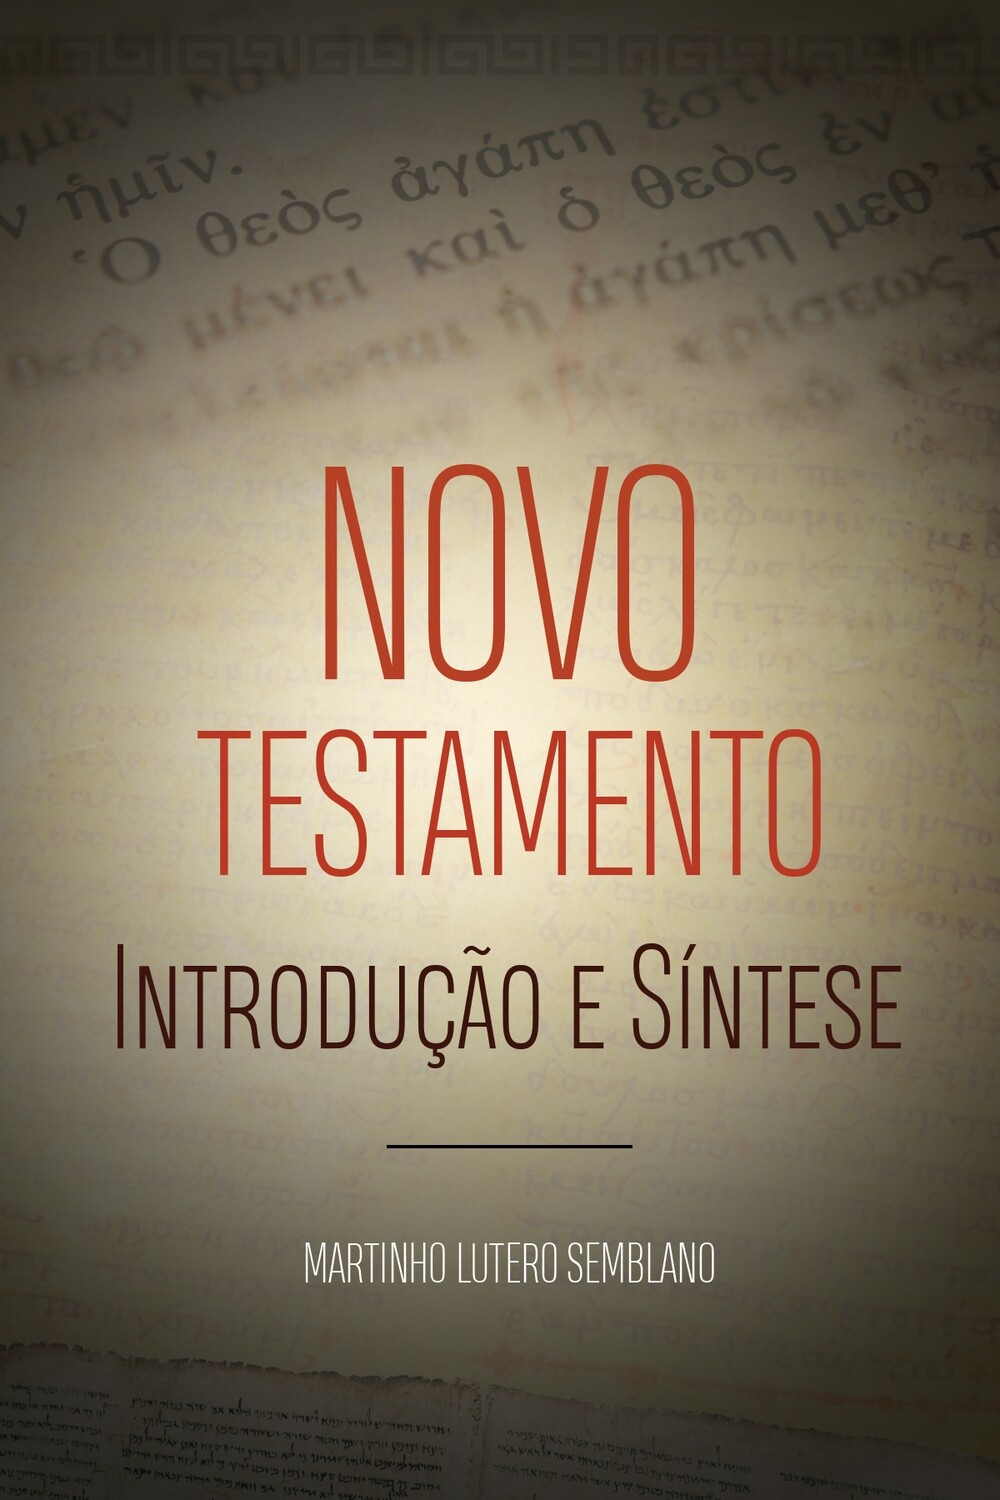 Novo Testamento: Introdução e síntese